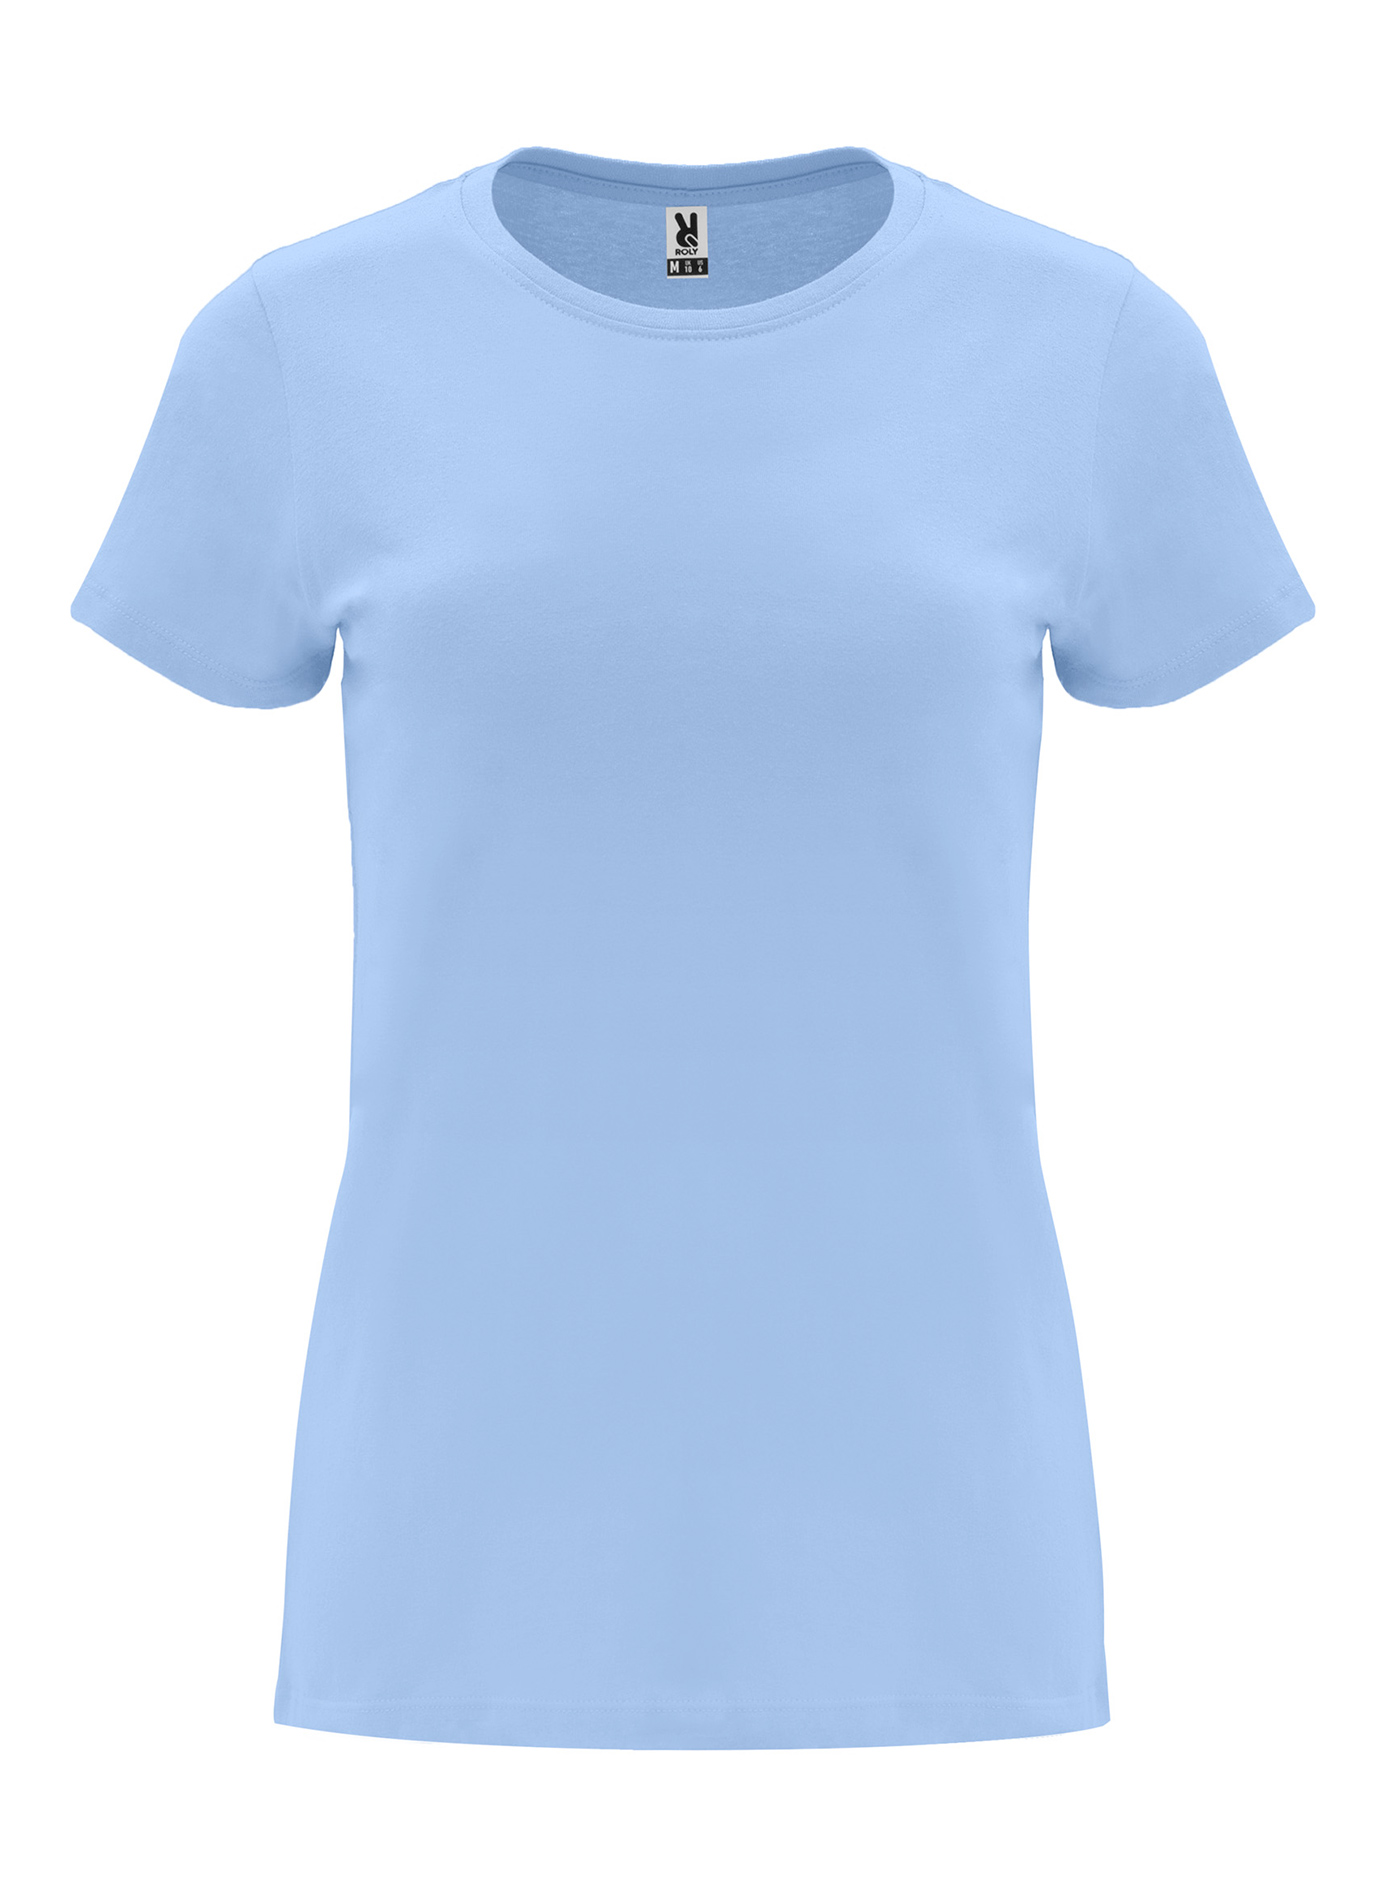 Dámské tričko Roly Capri - Blankytně modrá M